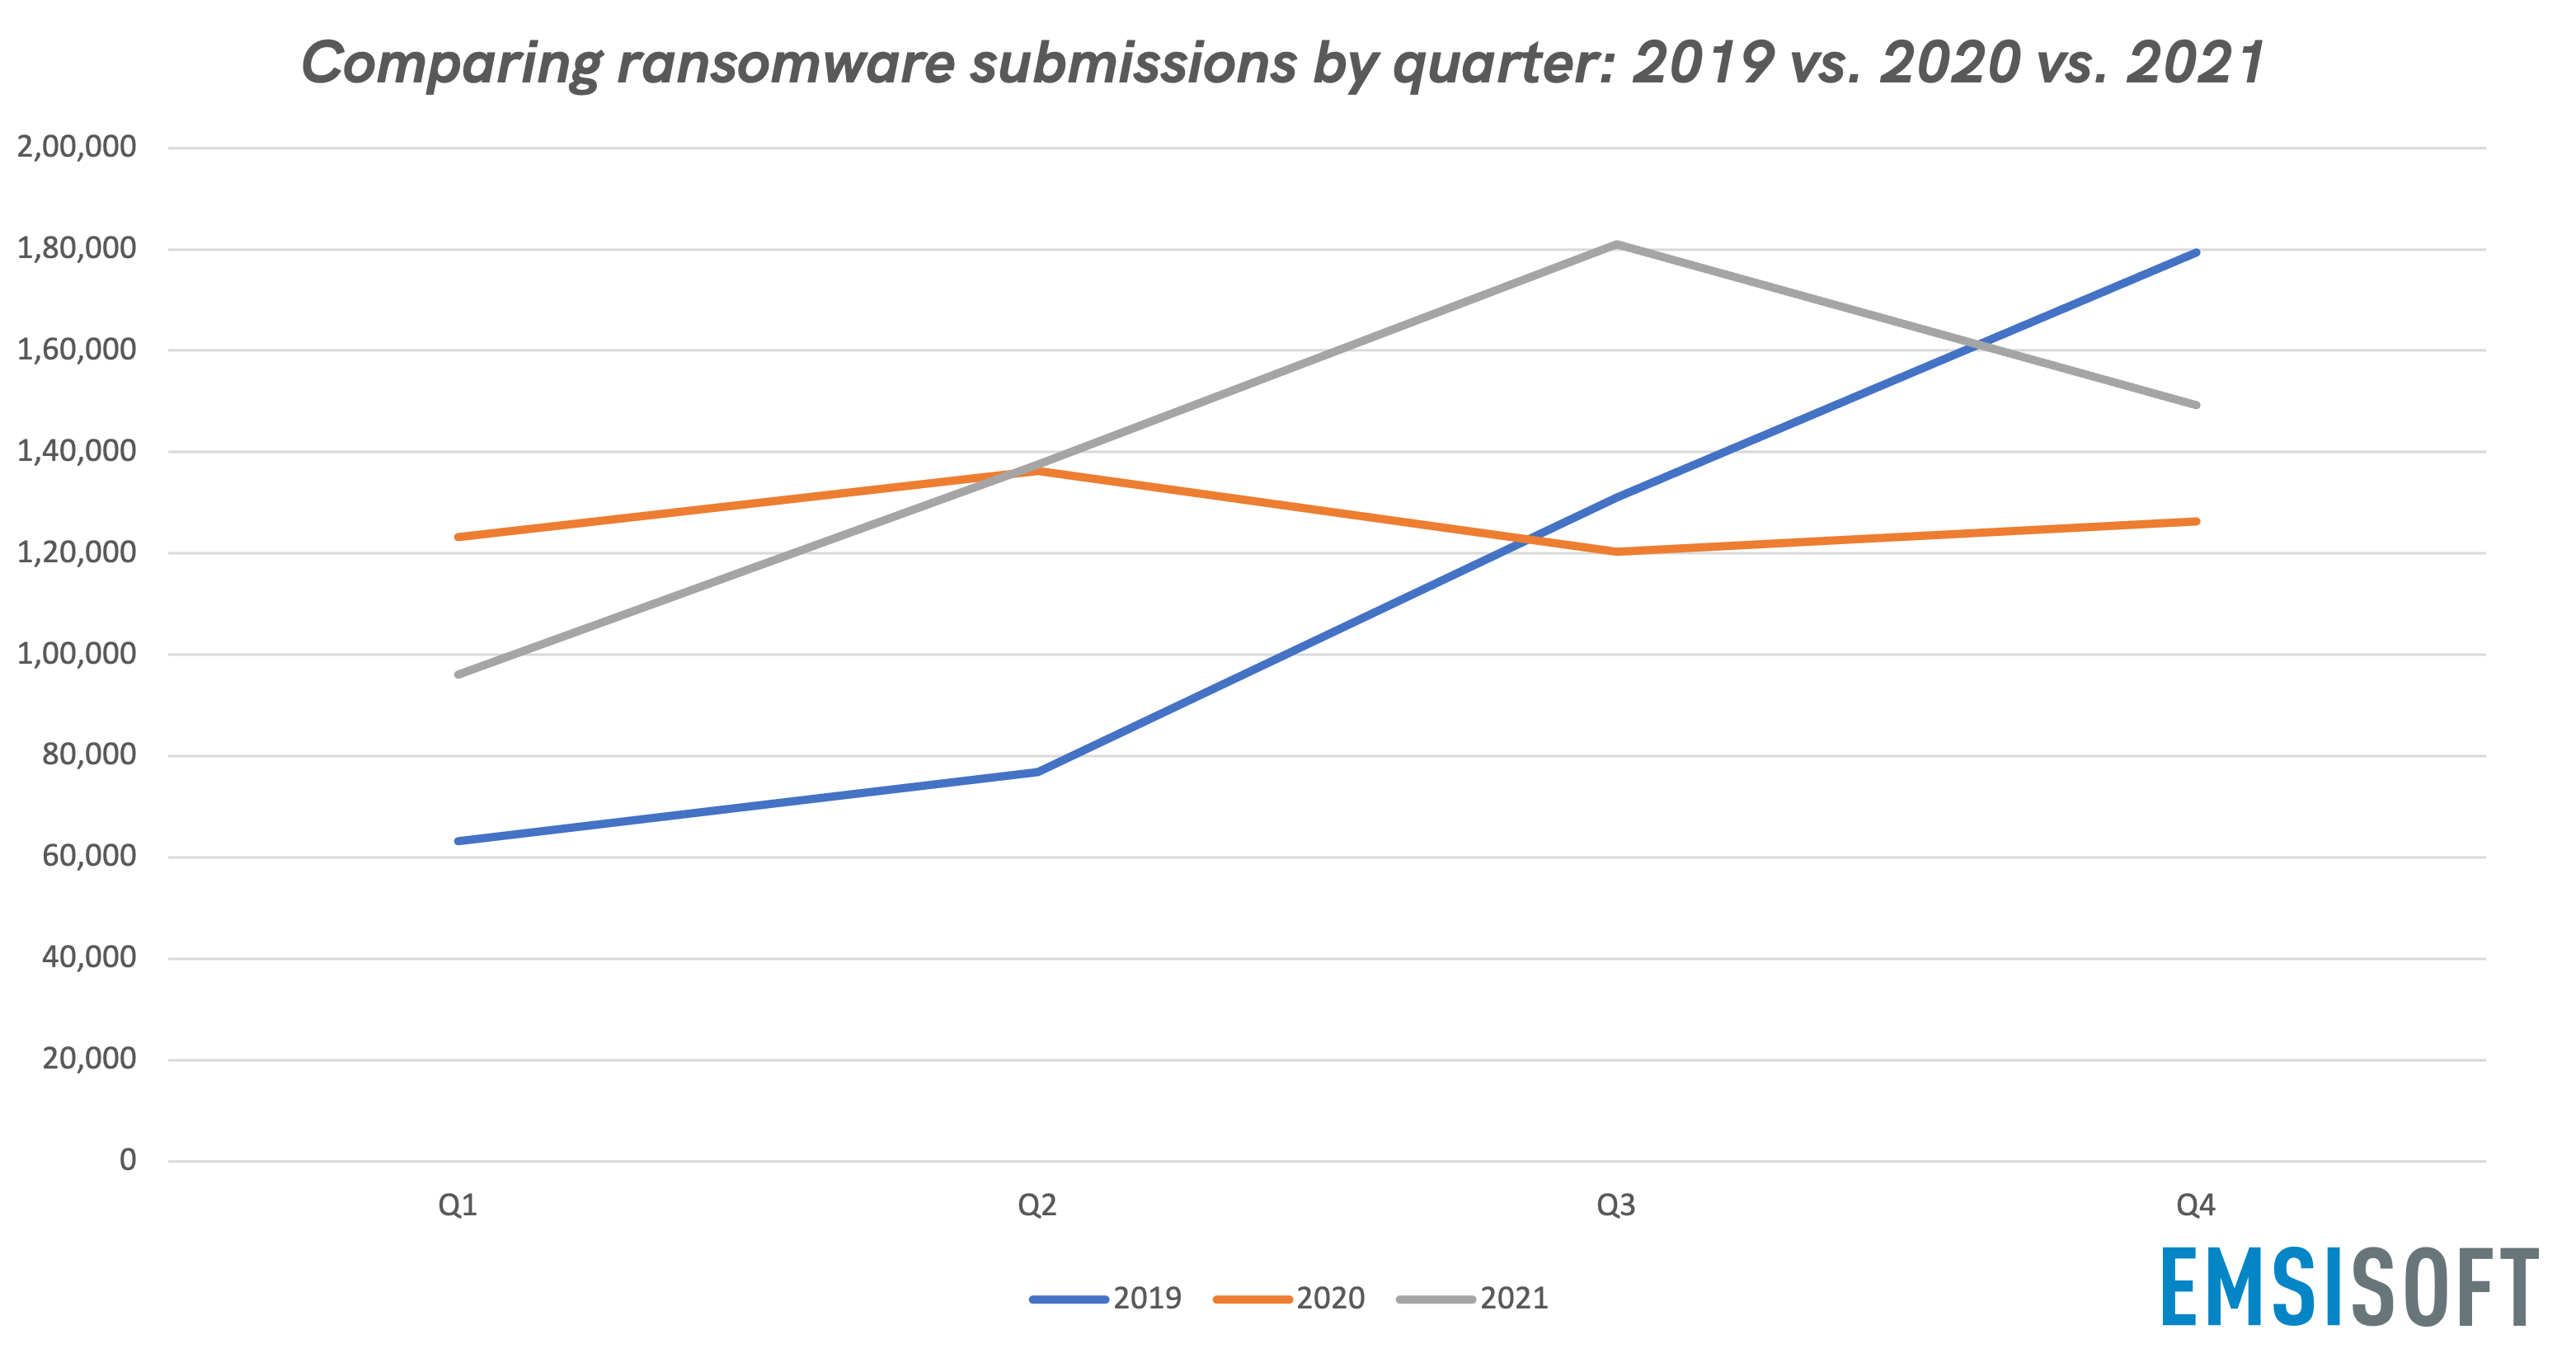 Die meisten Ransomware-Einsendungen pro Quartal im Vergleich für 2019, 2020 und 2021